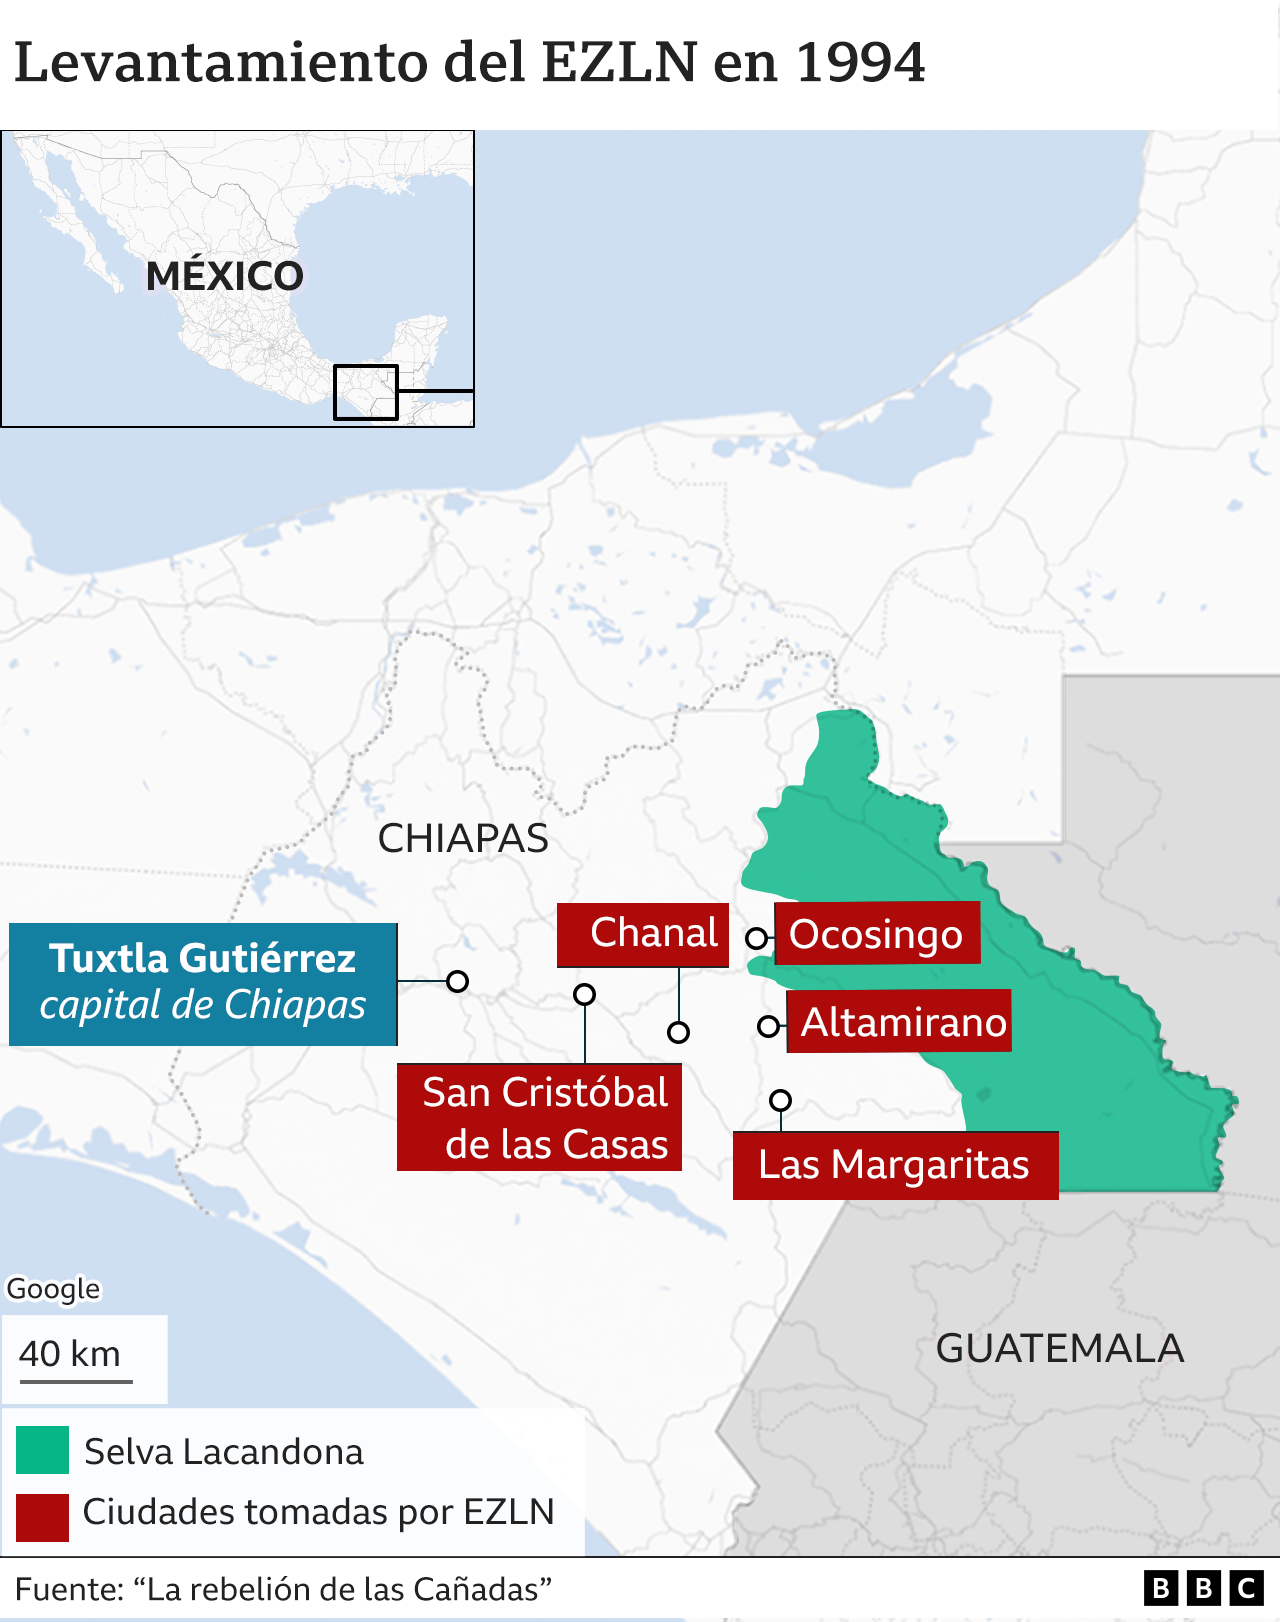 Mapa de las ciudades tomadas por el EZLN